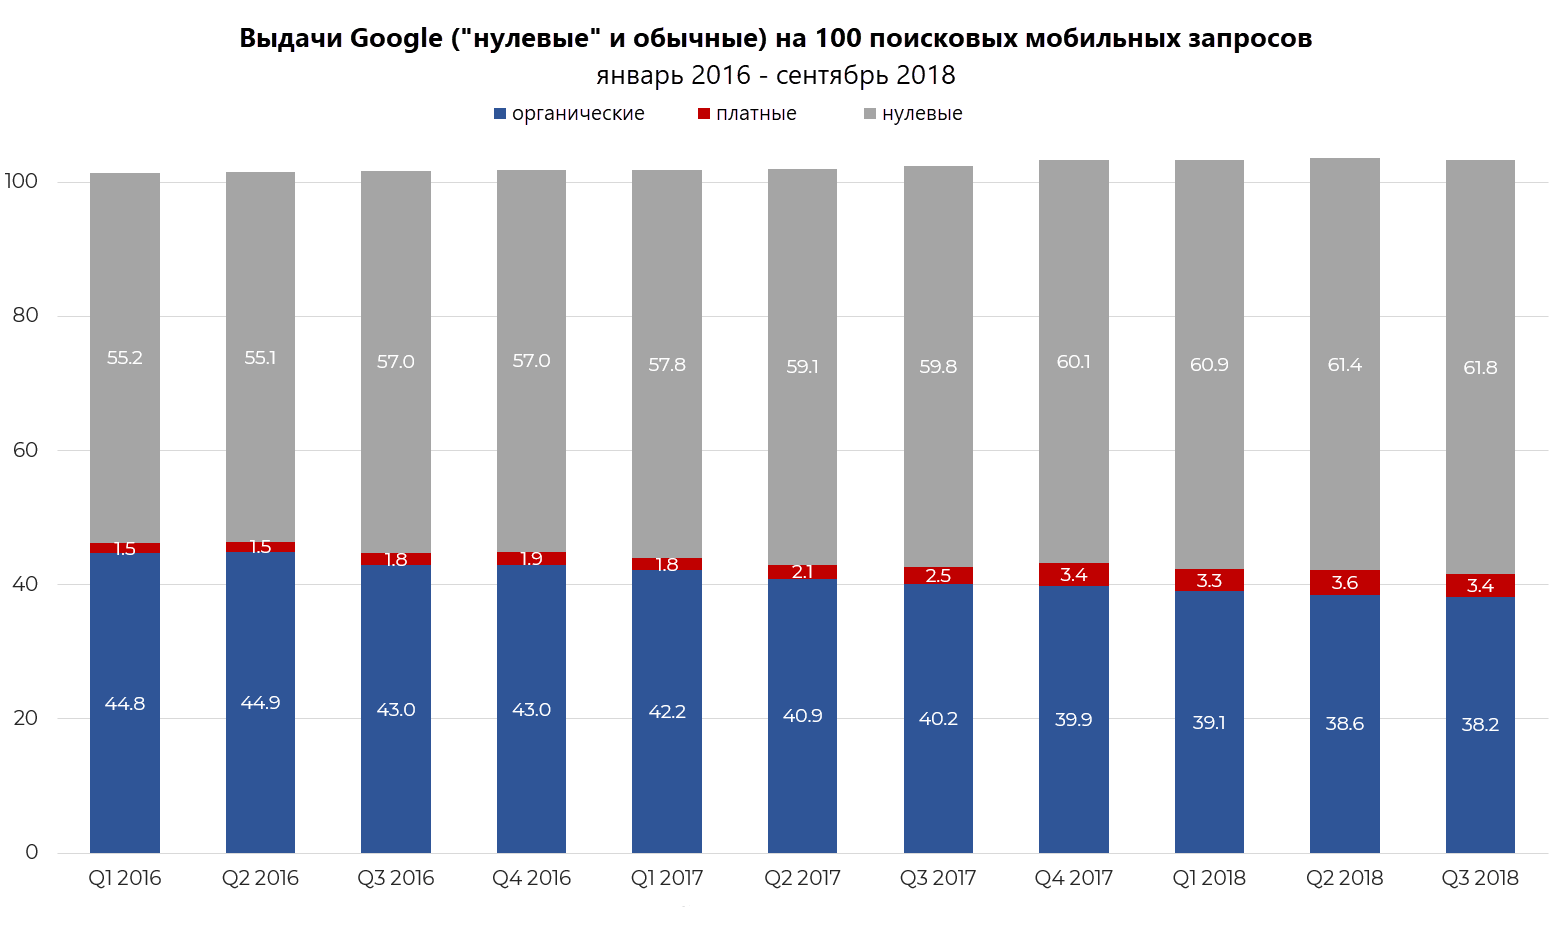 Исследование результатов выдачи Google по 100 мобильным поисковым запросам